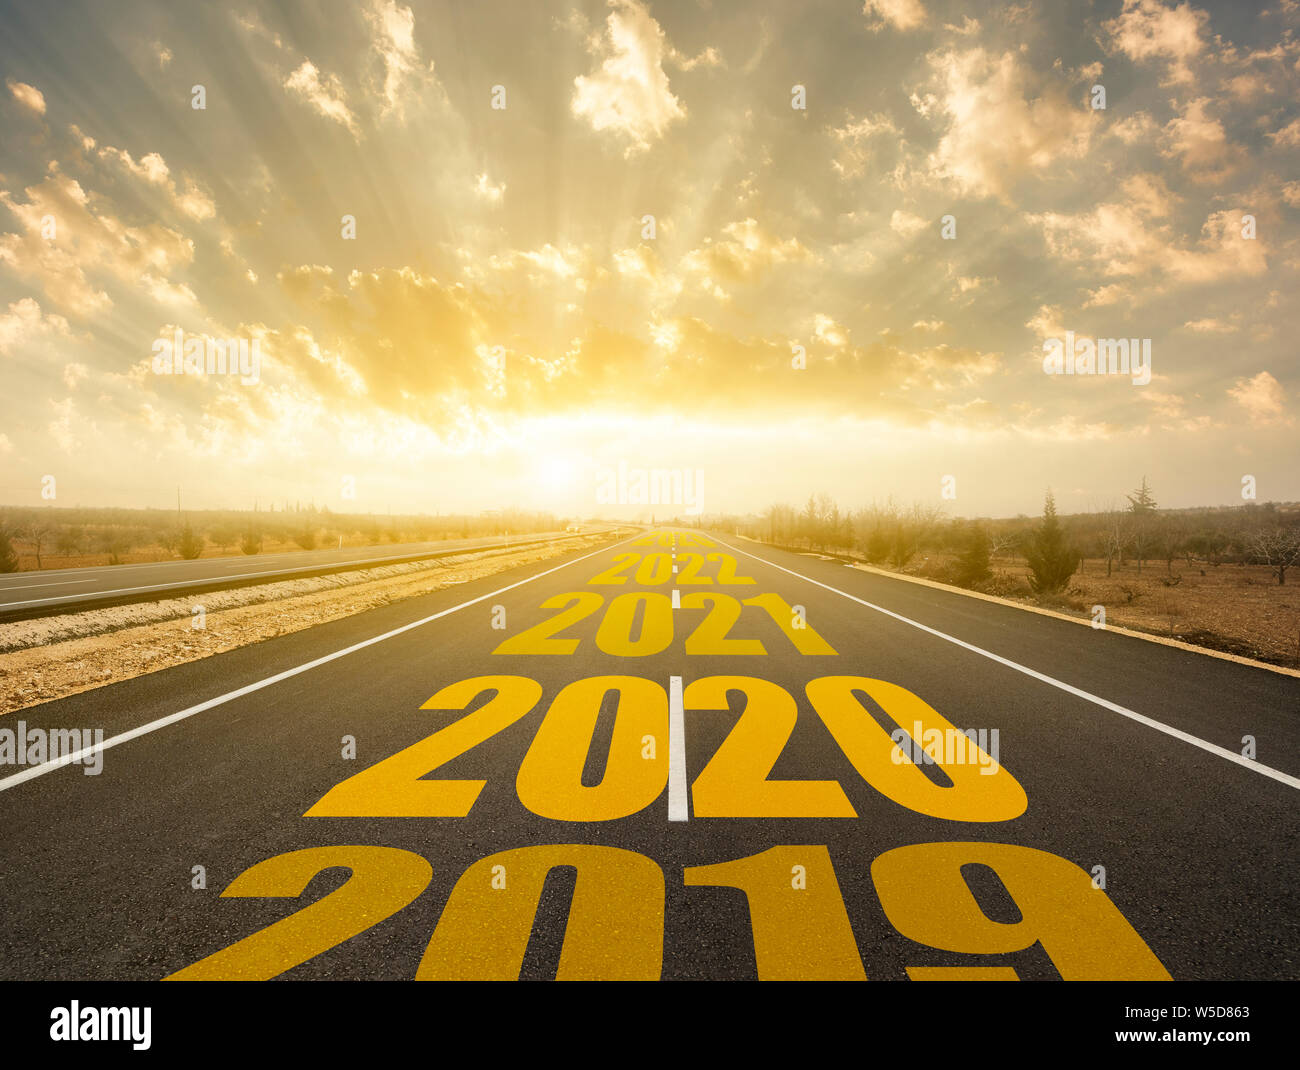 La parola 2020 scritta sulla highway road. Concept per il nuovo anno 2020. Foto Stock